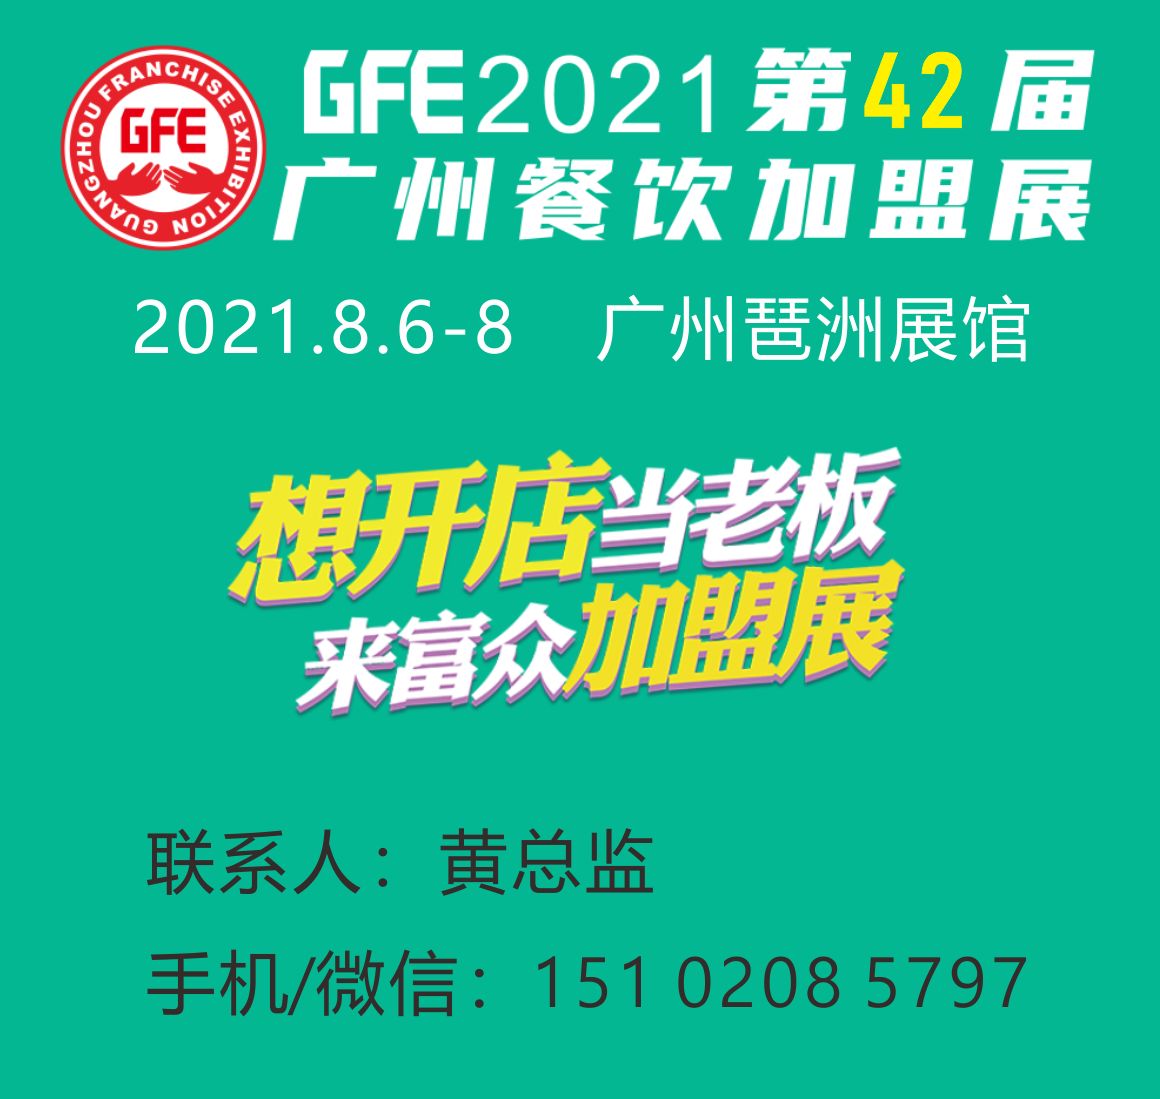 GFE2021第42届广州国际餐饮加盟展